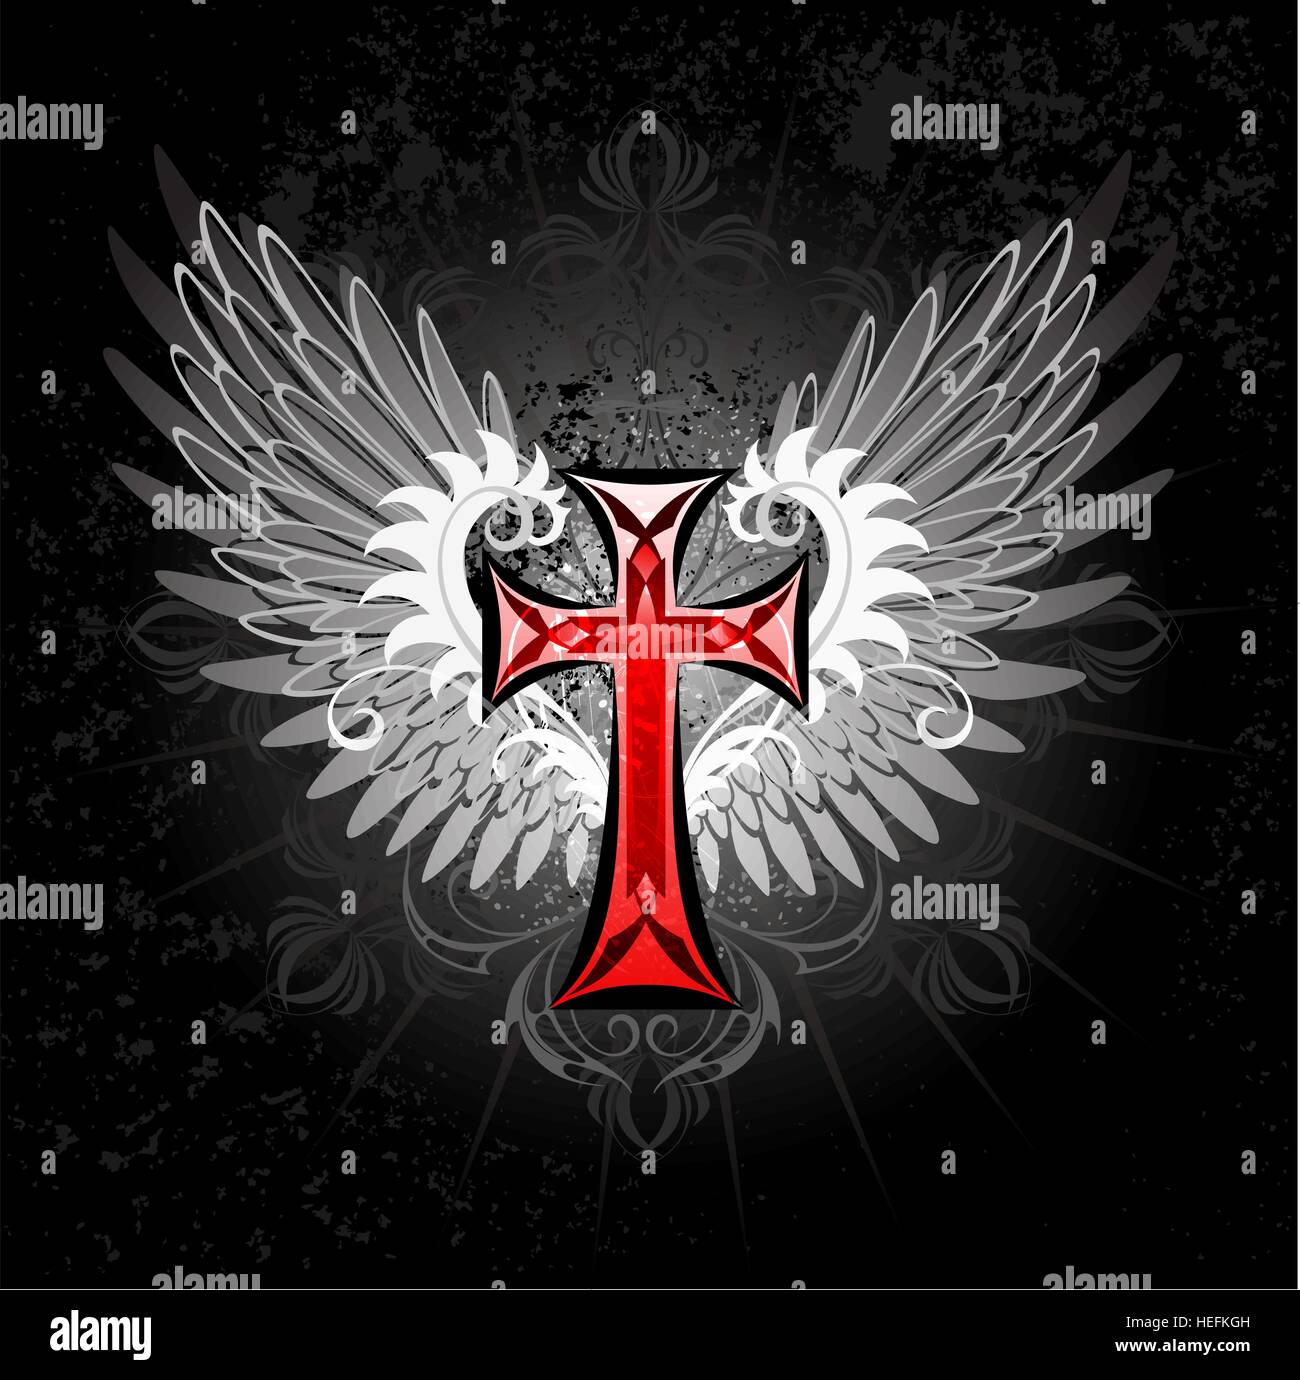 kunstvoll bemalte rotes Kreuz mit grauen Flügeln auf einem schwarzen Hintergrund. Stock Vektor